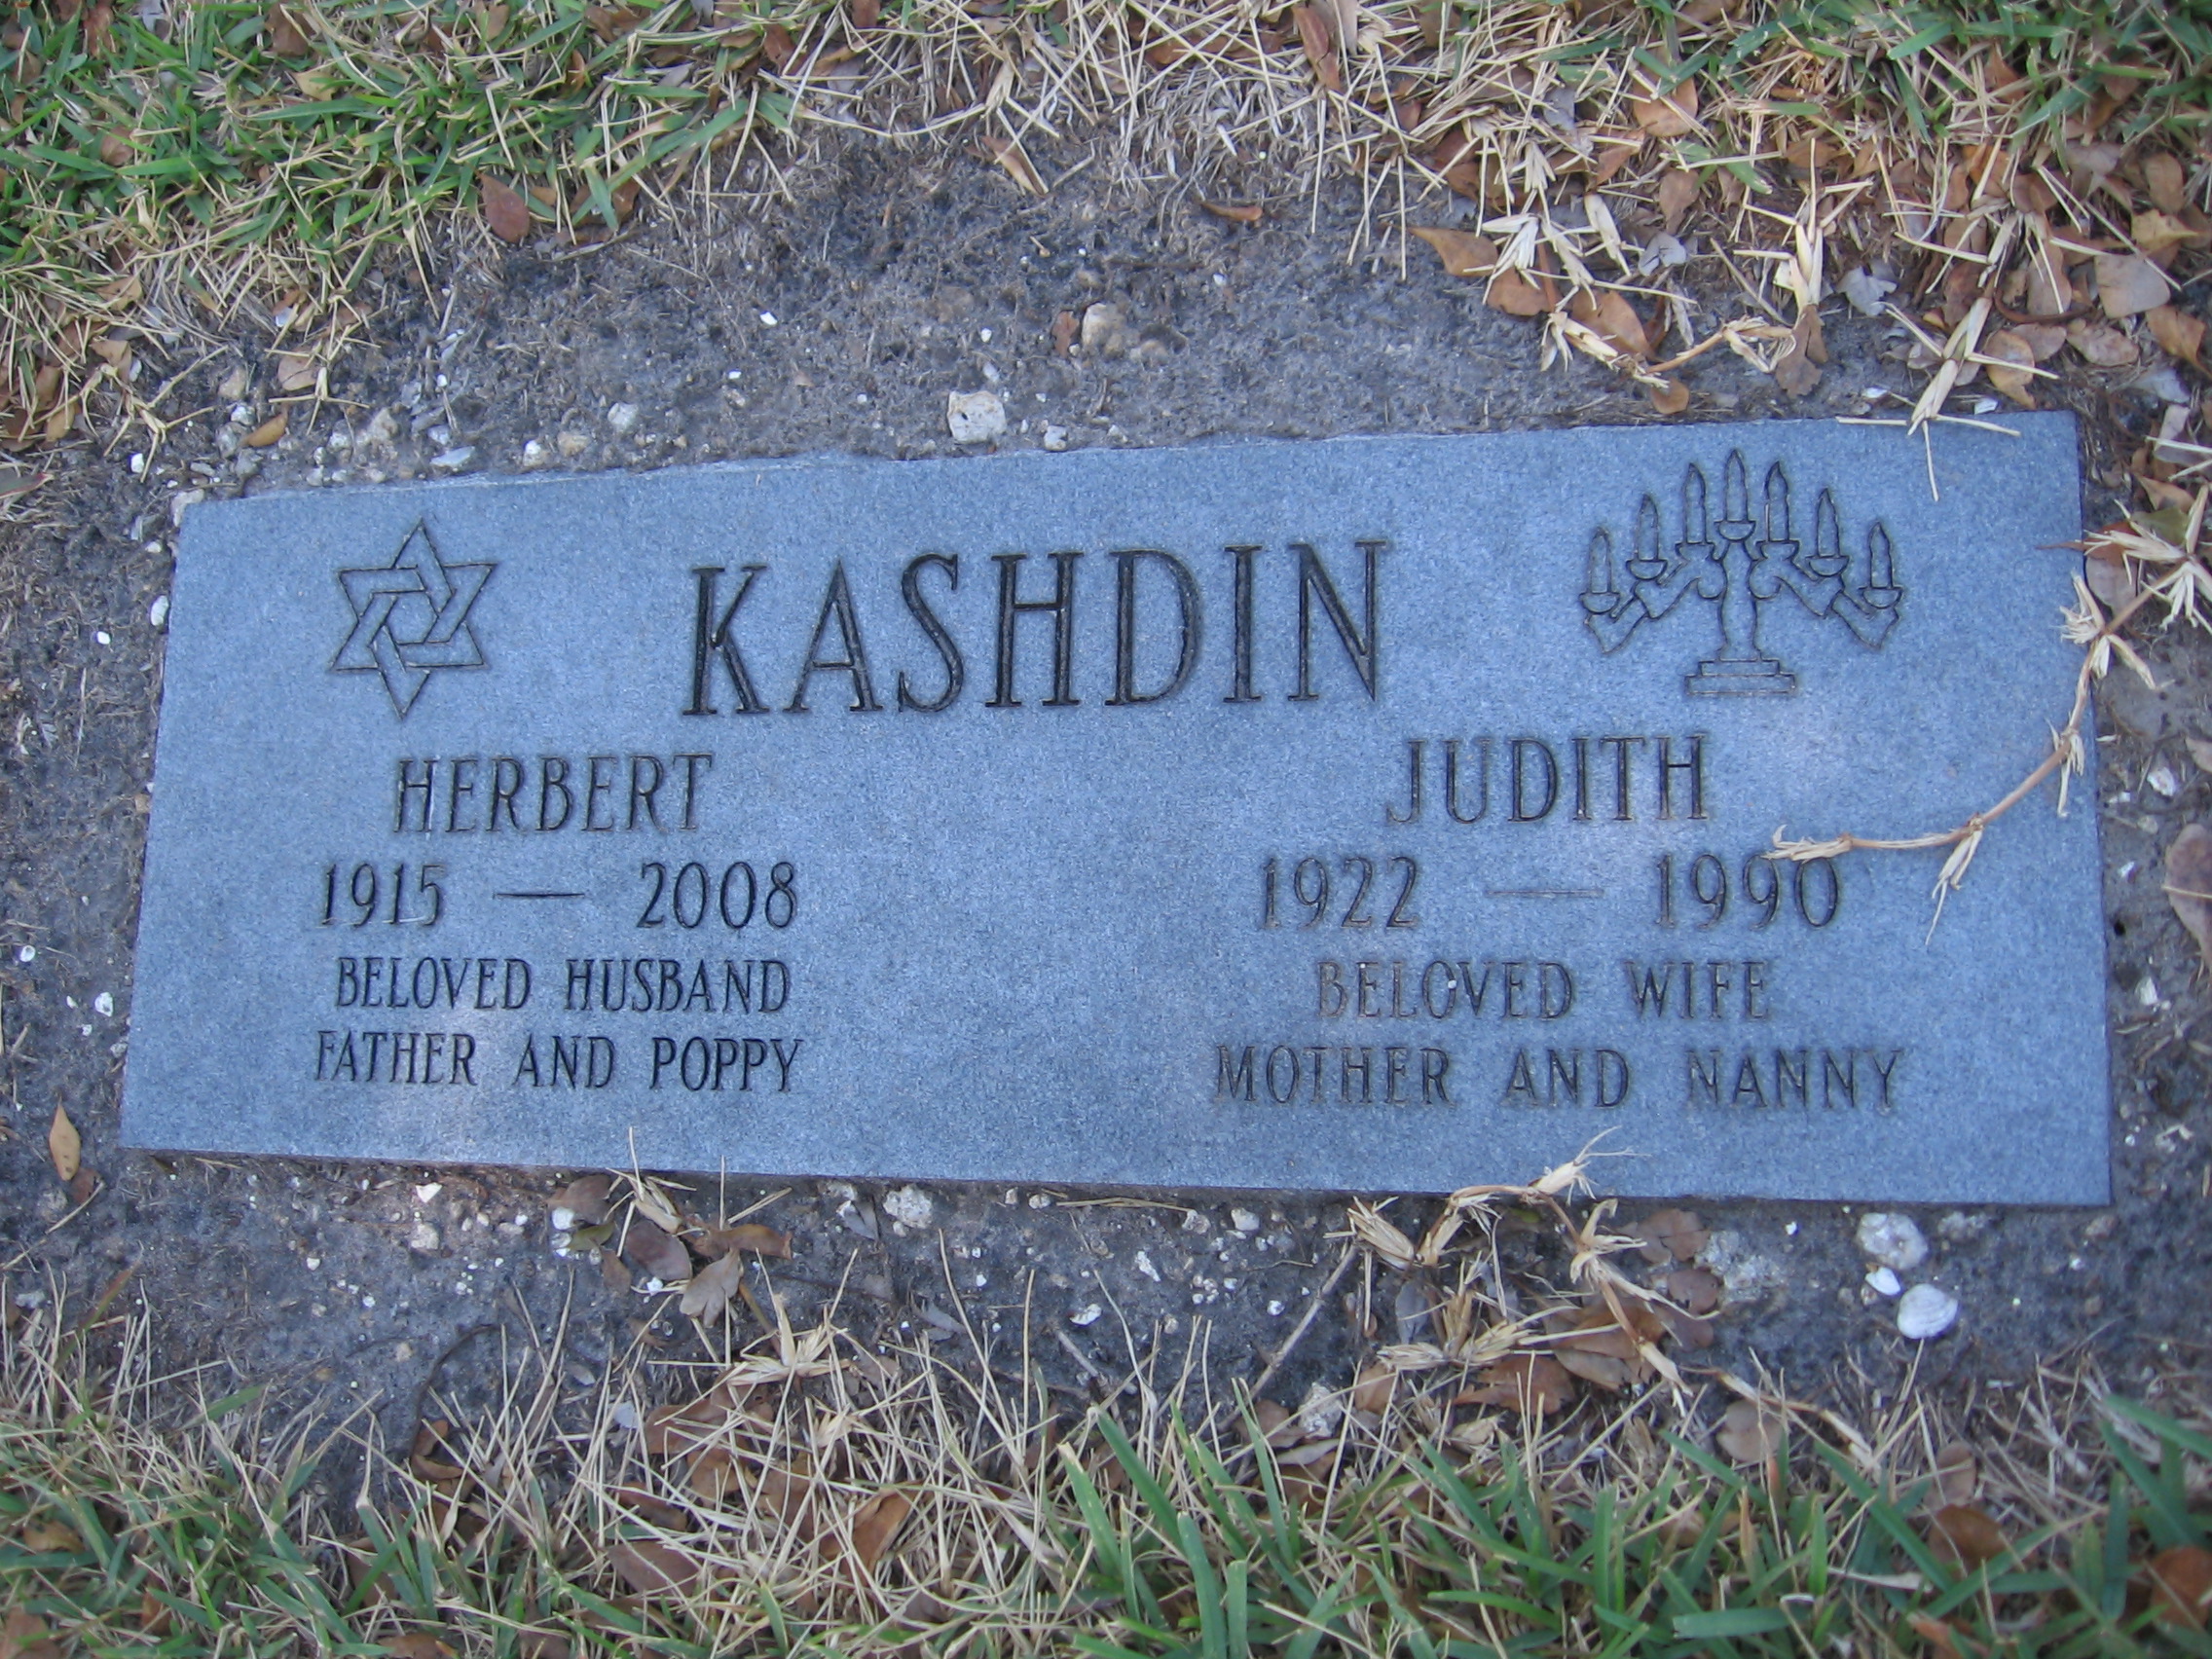 Judith Kashdin